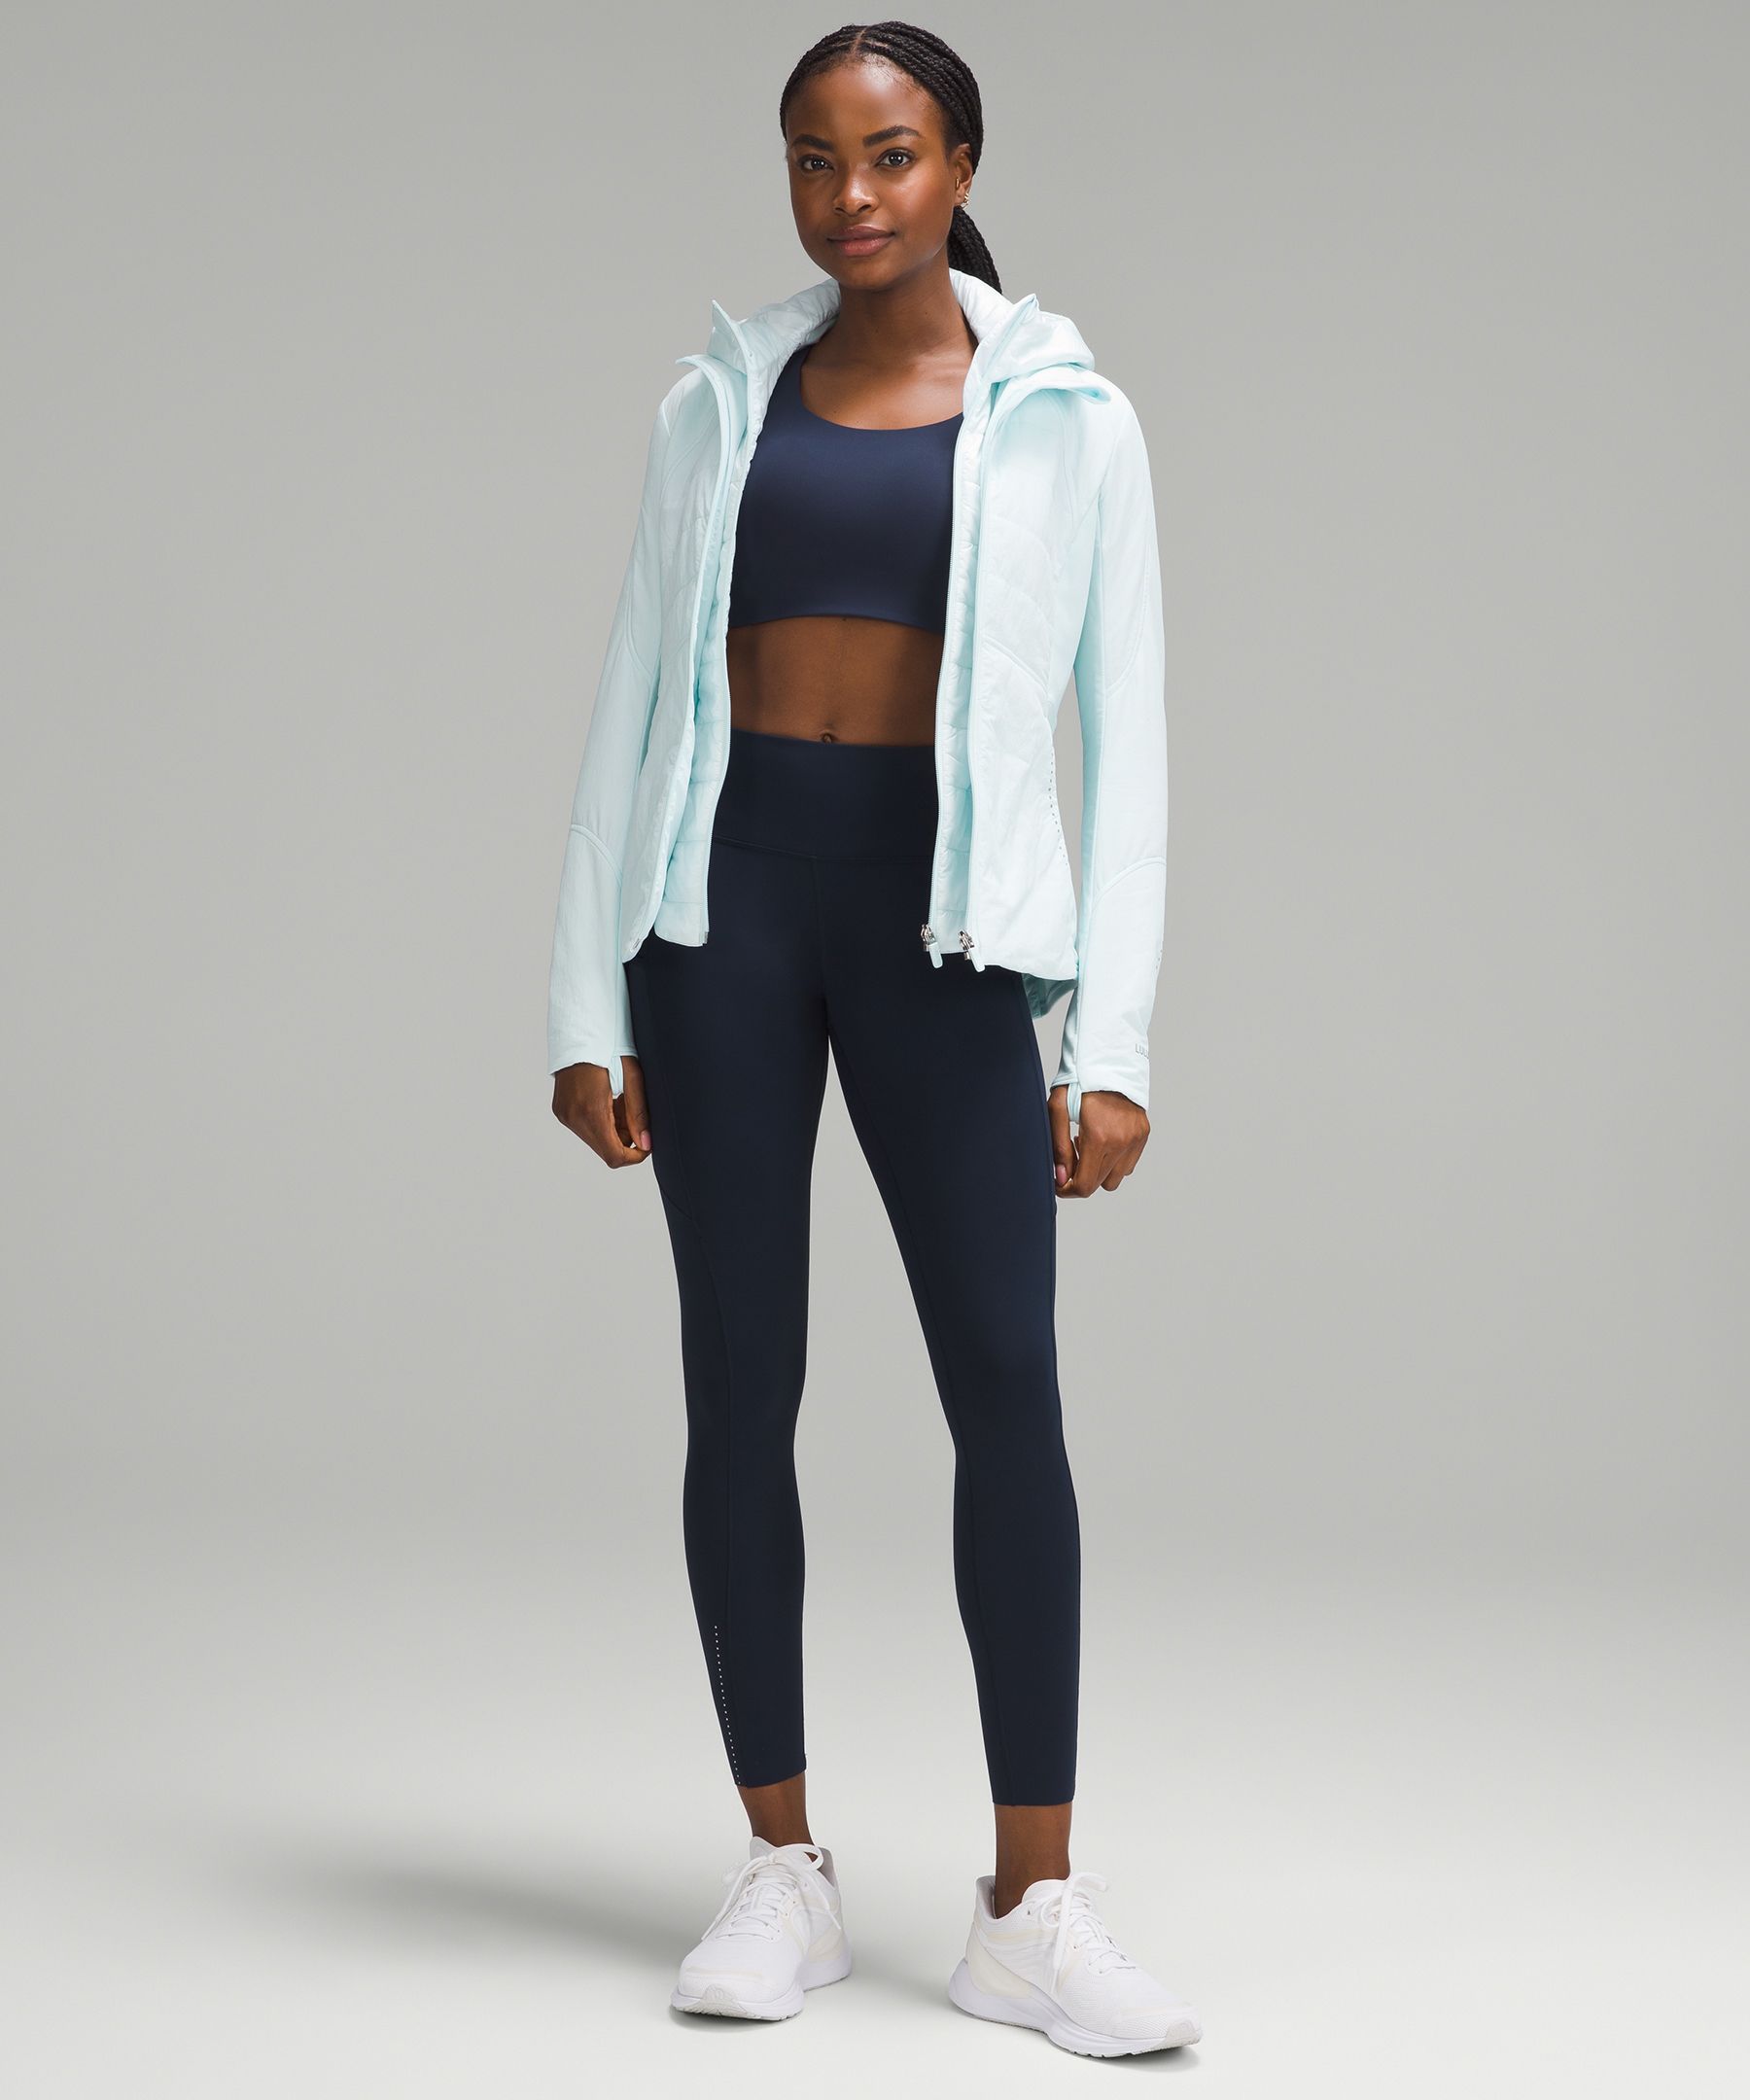 Lululemon Women's Forme Jacket With Thumbholes Soot Light Size 6 Yoga  Running